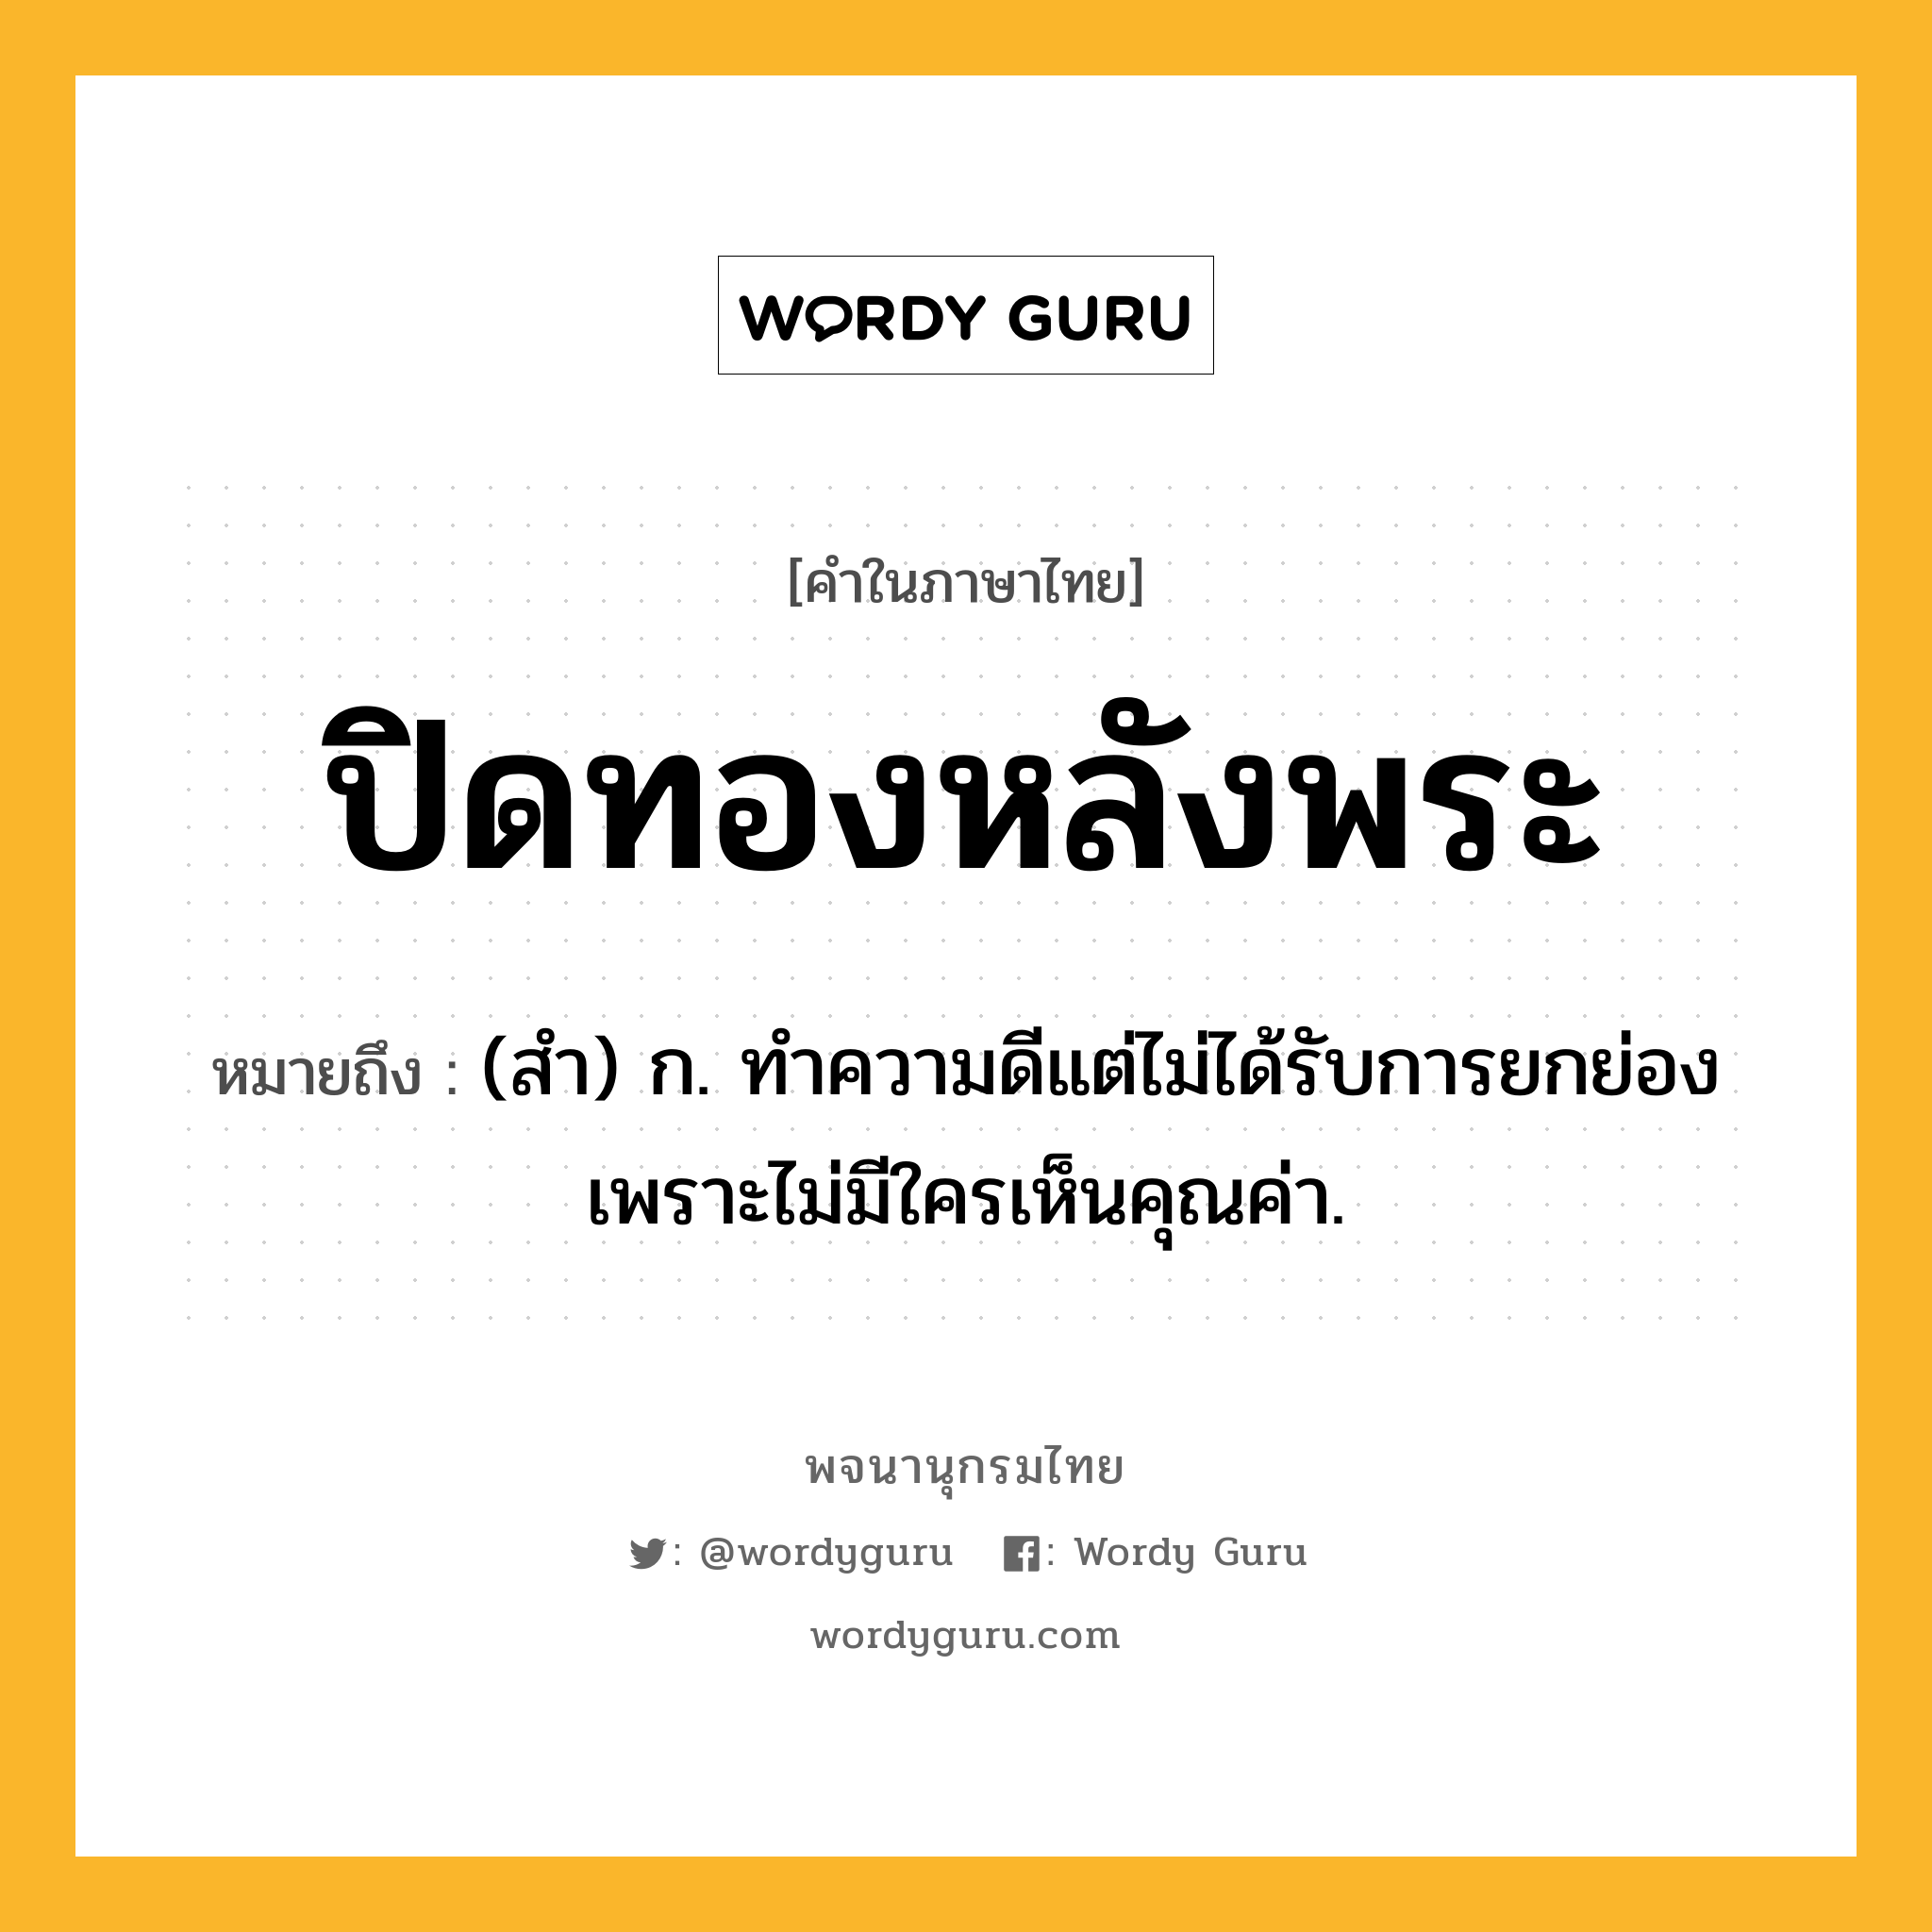 ปิดทองหลังพระ ความหมาย หมายถึงอะไร?, คำในภาษาไทย ปิดทองหลังพระ หมายถึง (สํา) ก. ทําความดีแต่ไม่ได้รับการยกย่อง เพราะไม่มีใครเห็นคุณค่า.